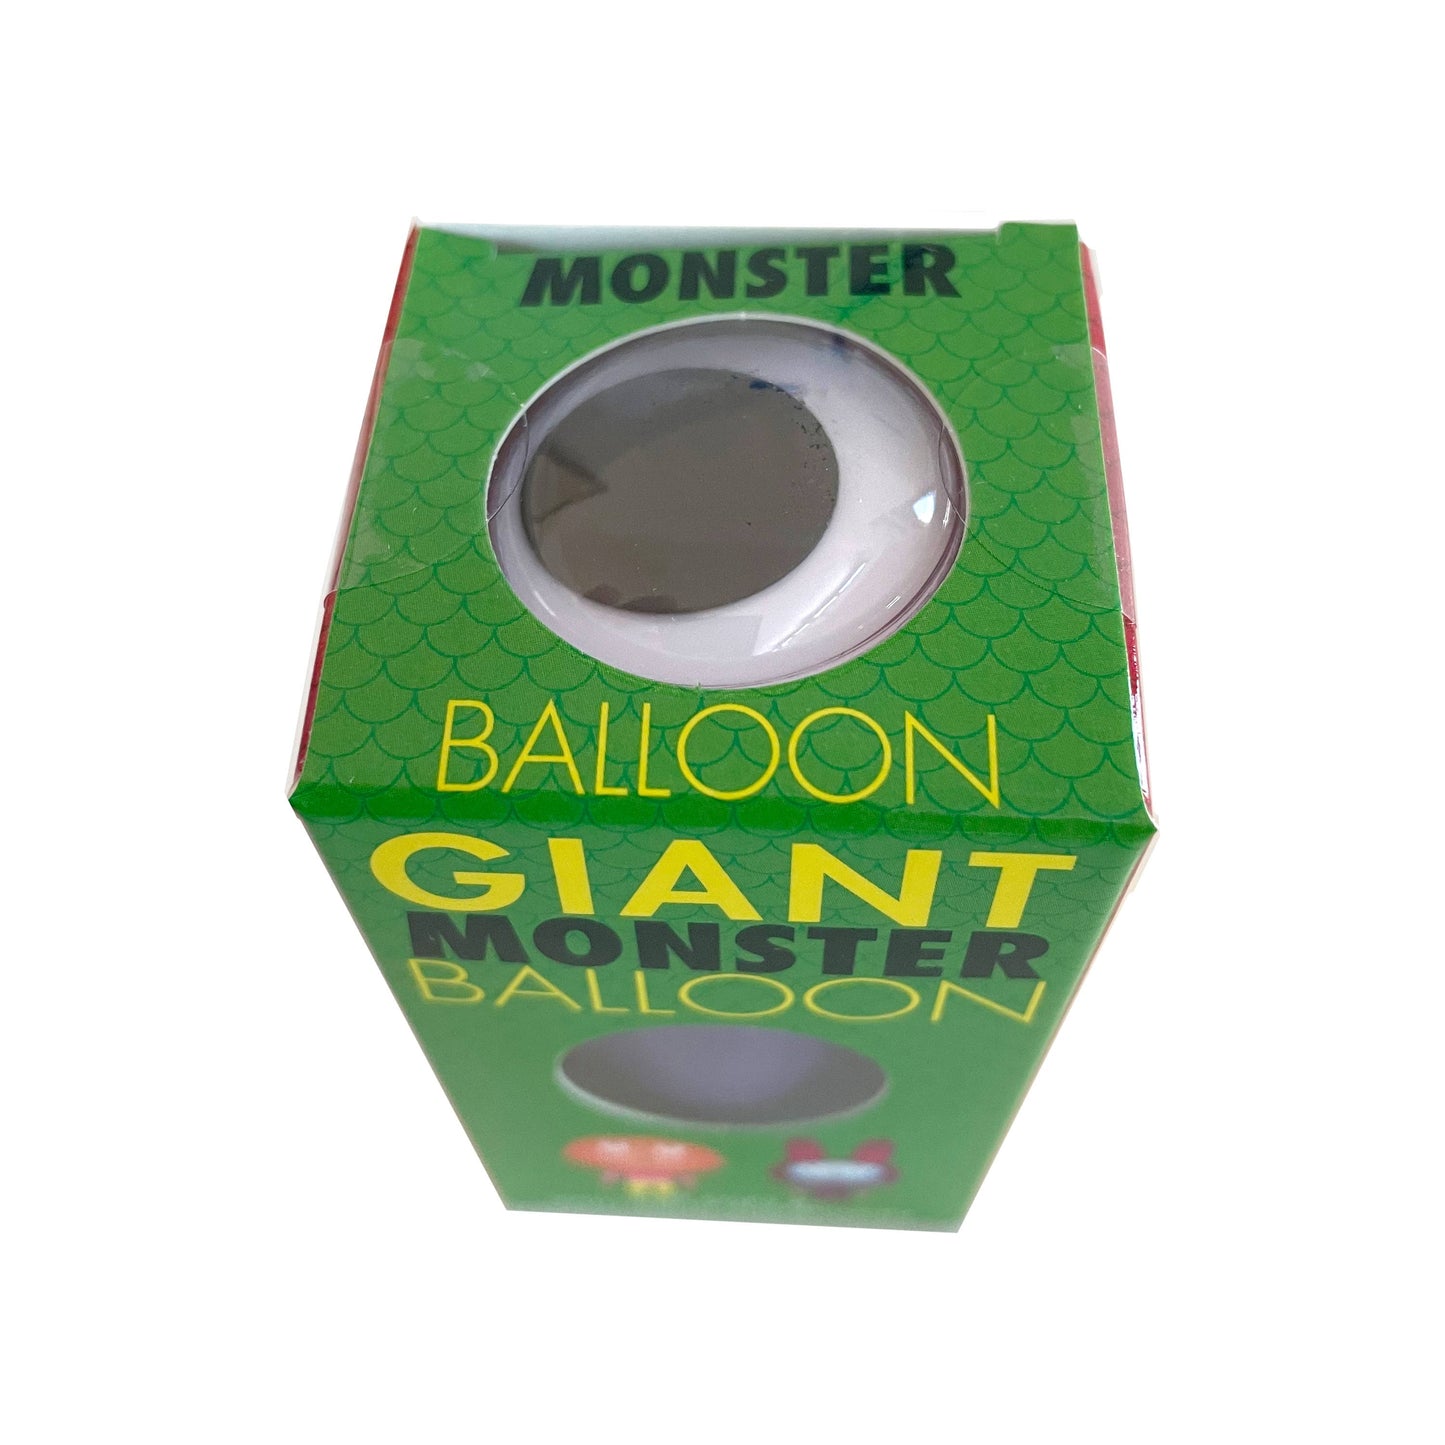 Giant Monster Balloon